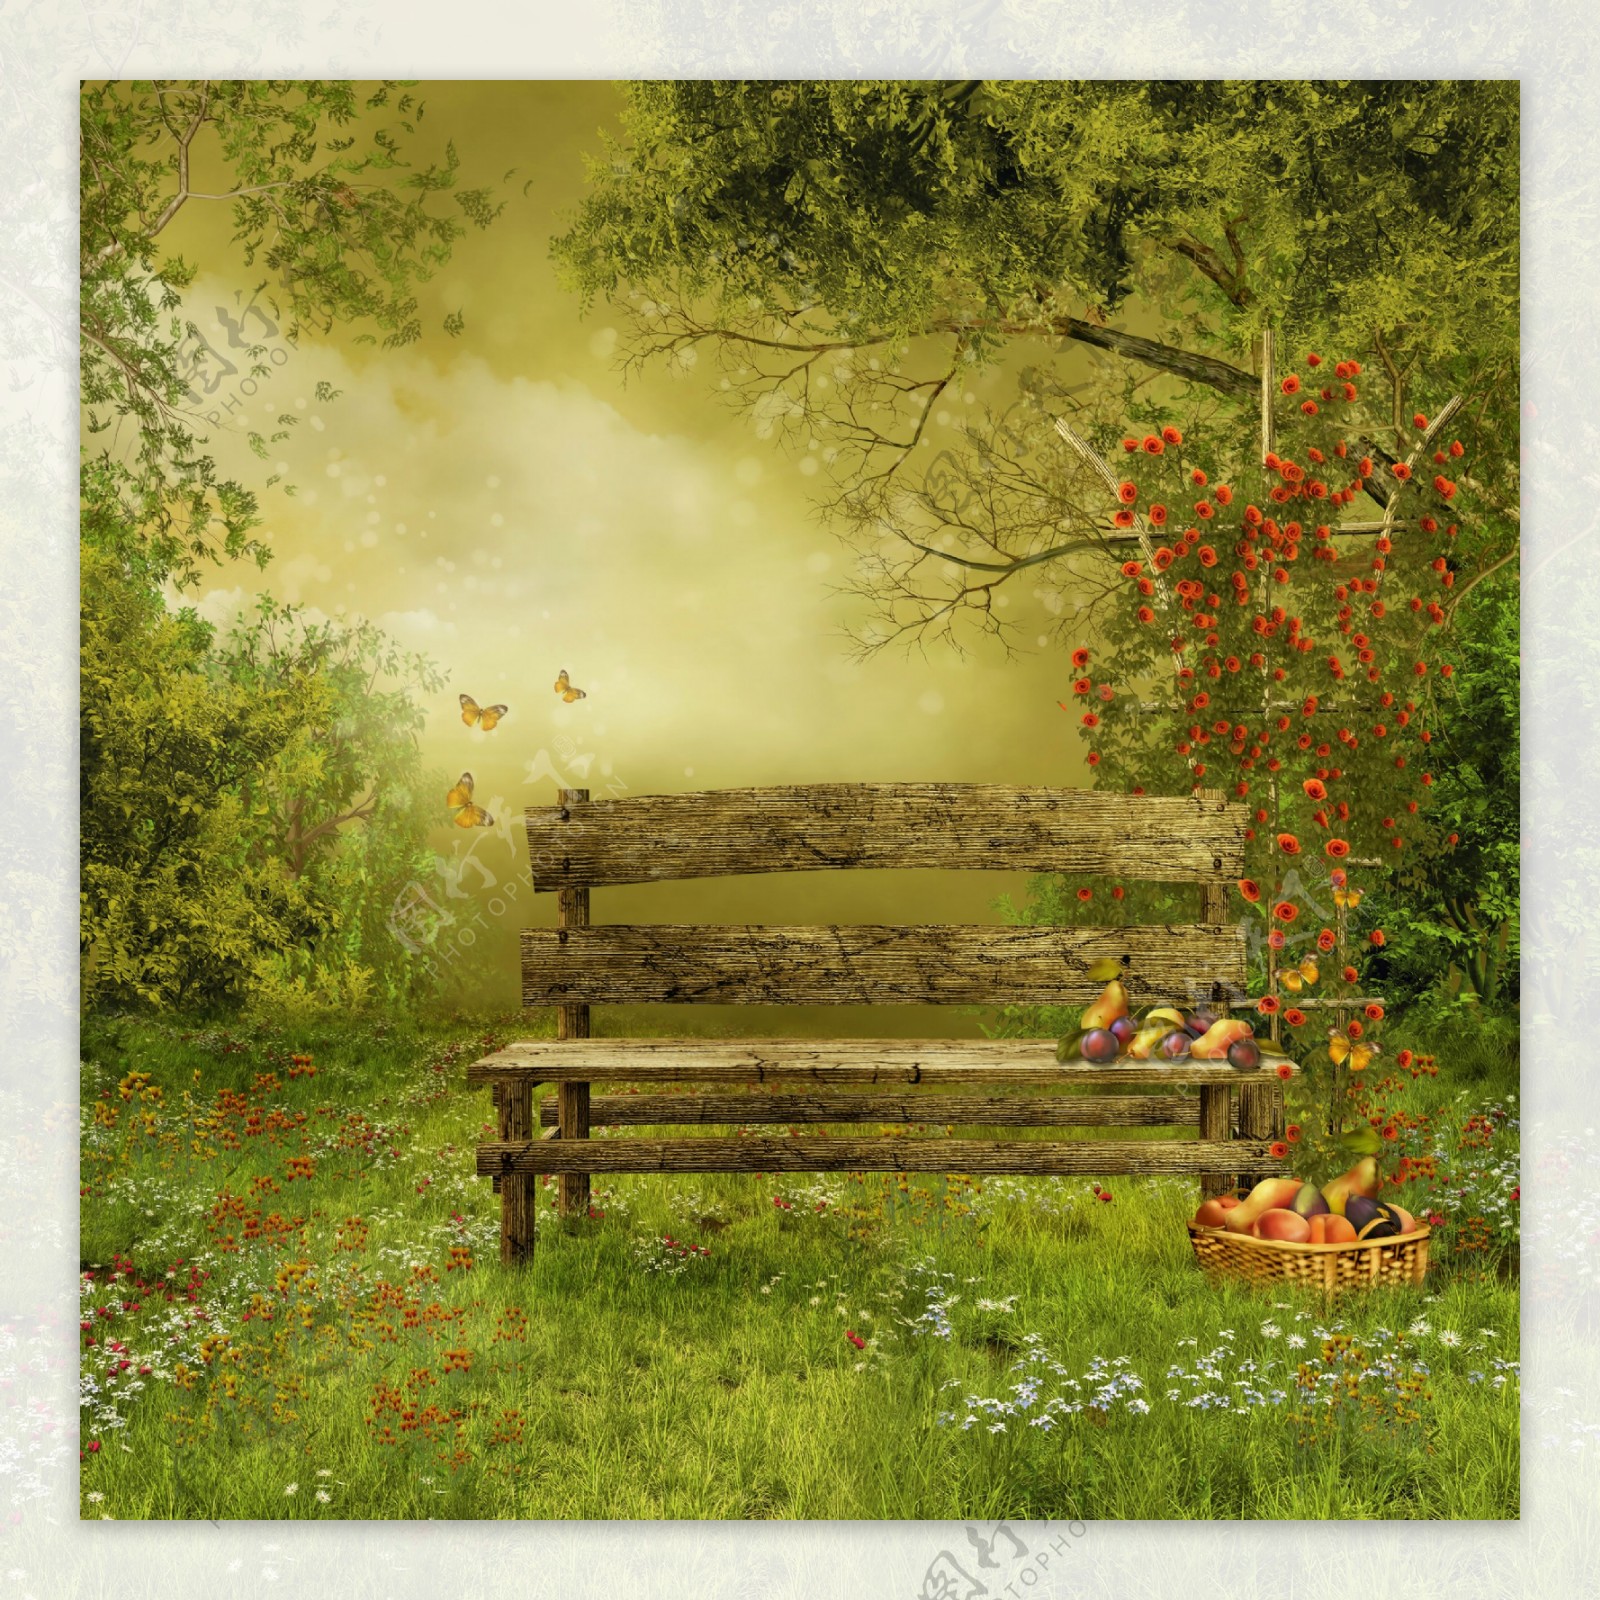 木椅子水果与草地风景图片